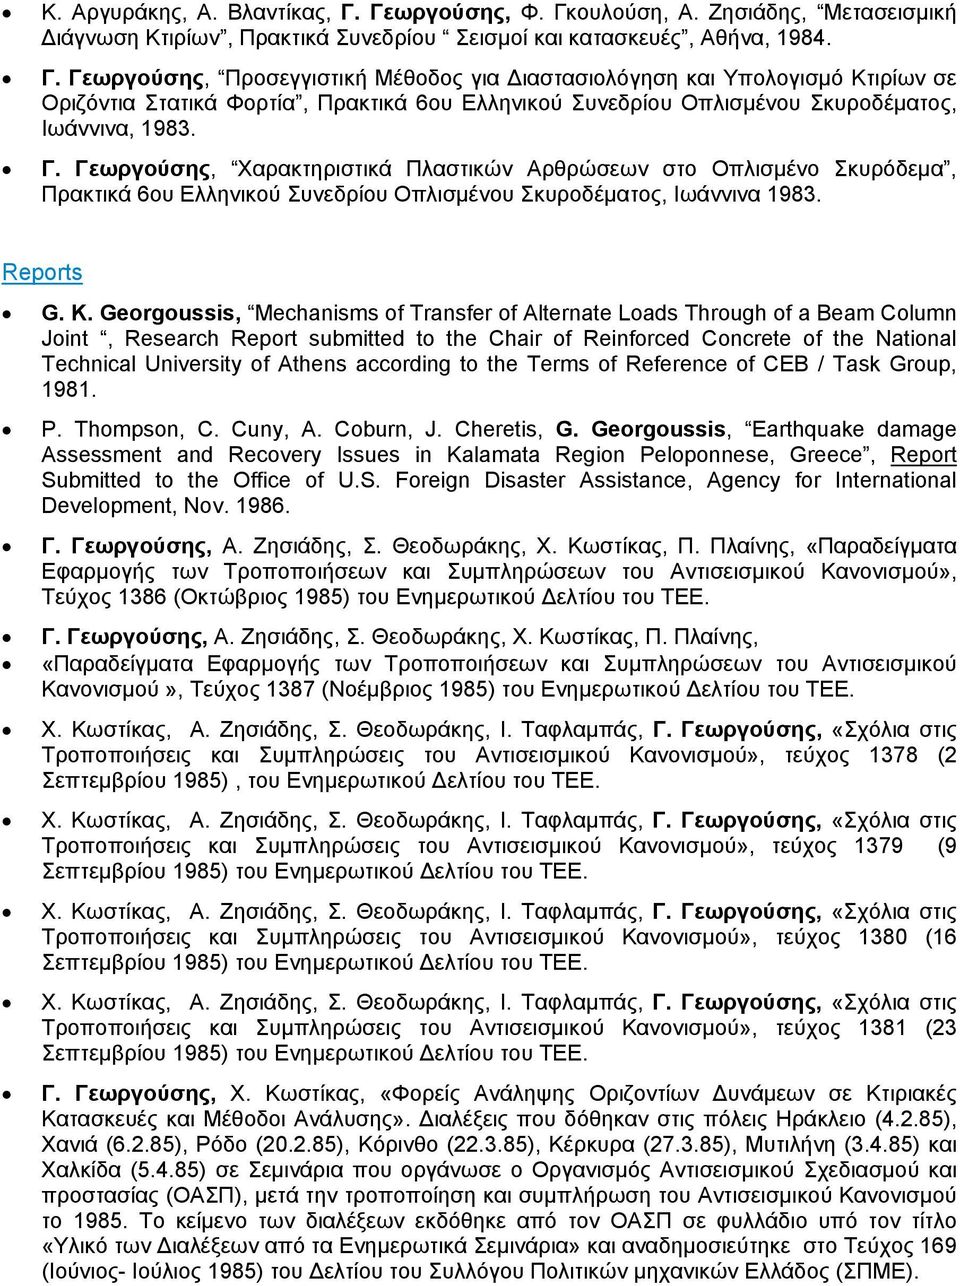 Γ. Γεωργούσης, Xαρακτηριστικά Πλαστικών Αρθρώσεων στο Οπλισμένο Σκυρόδεμα, Πρακτικά 6ου Ελληνικού Συνεδρίου Οπλισμένου Σκυροδέματος, Ιωάννινα 1983. Reports G. K.